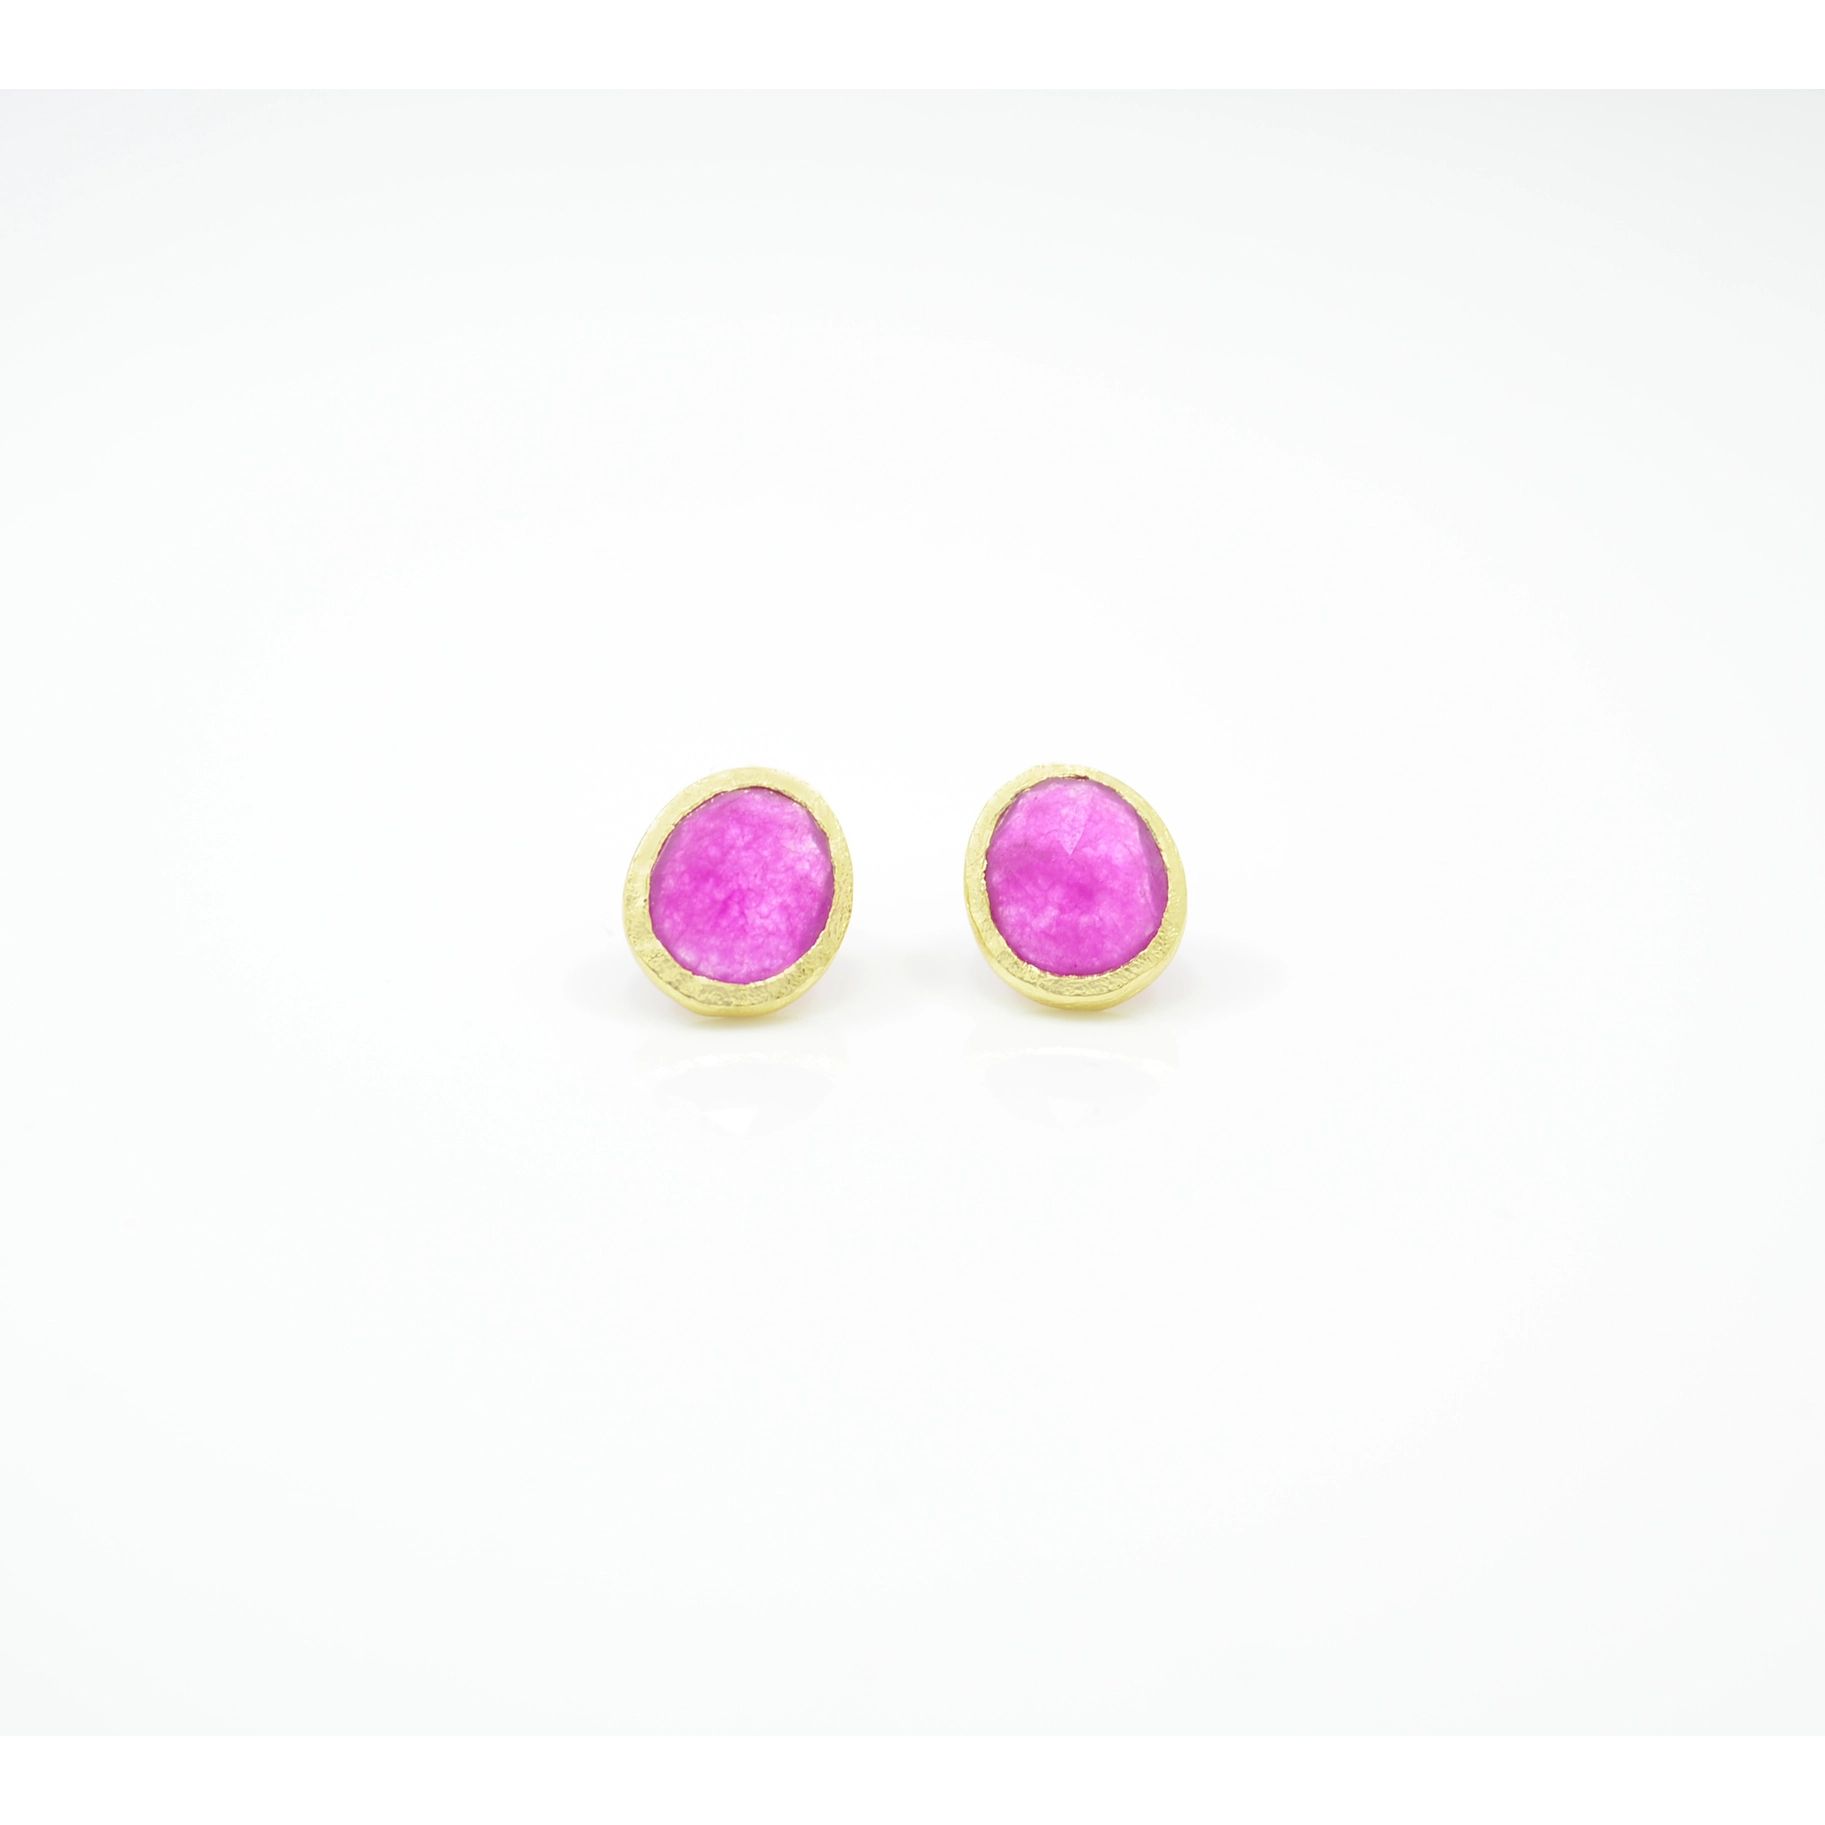 Schmuckoo 18k Gold Plated Brass Ear Pins Pink Jade